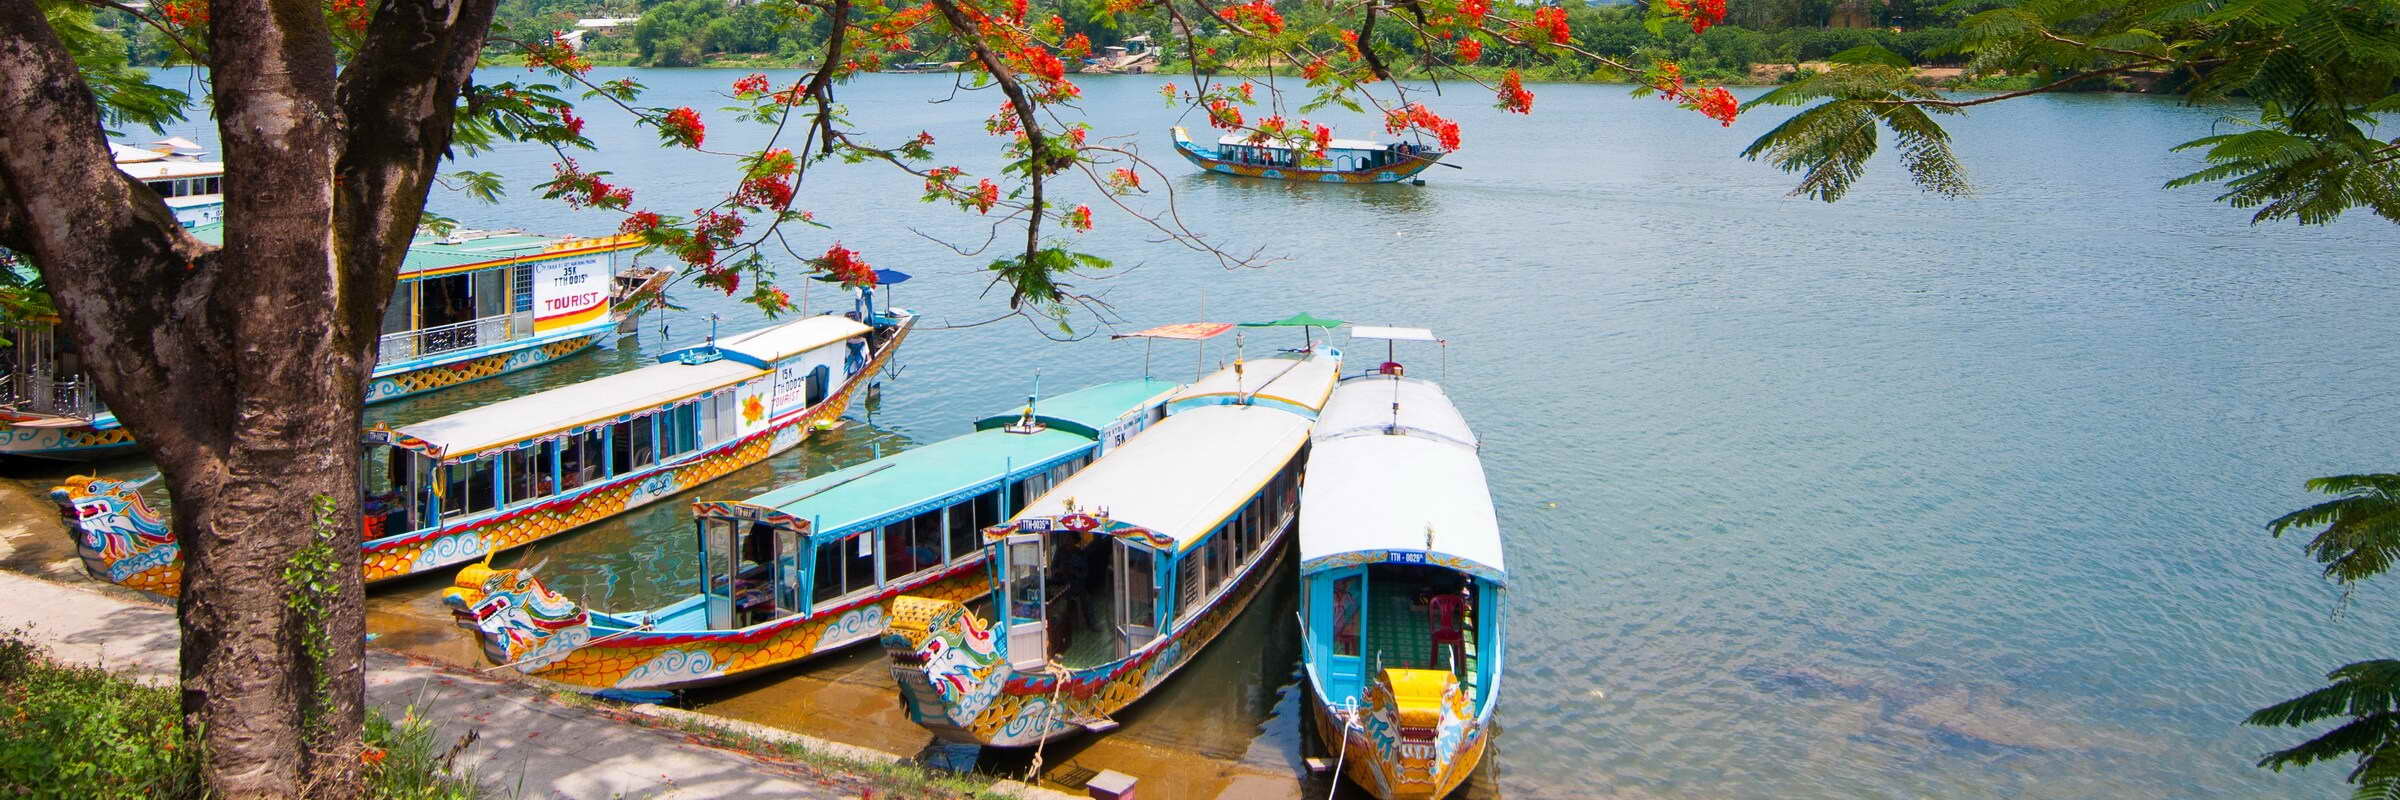 Der Fluss der Wohlgerüche, kurz Parfümfluss genannt, ist ein langsam fließender Fluss in Zentralvietnam.